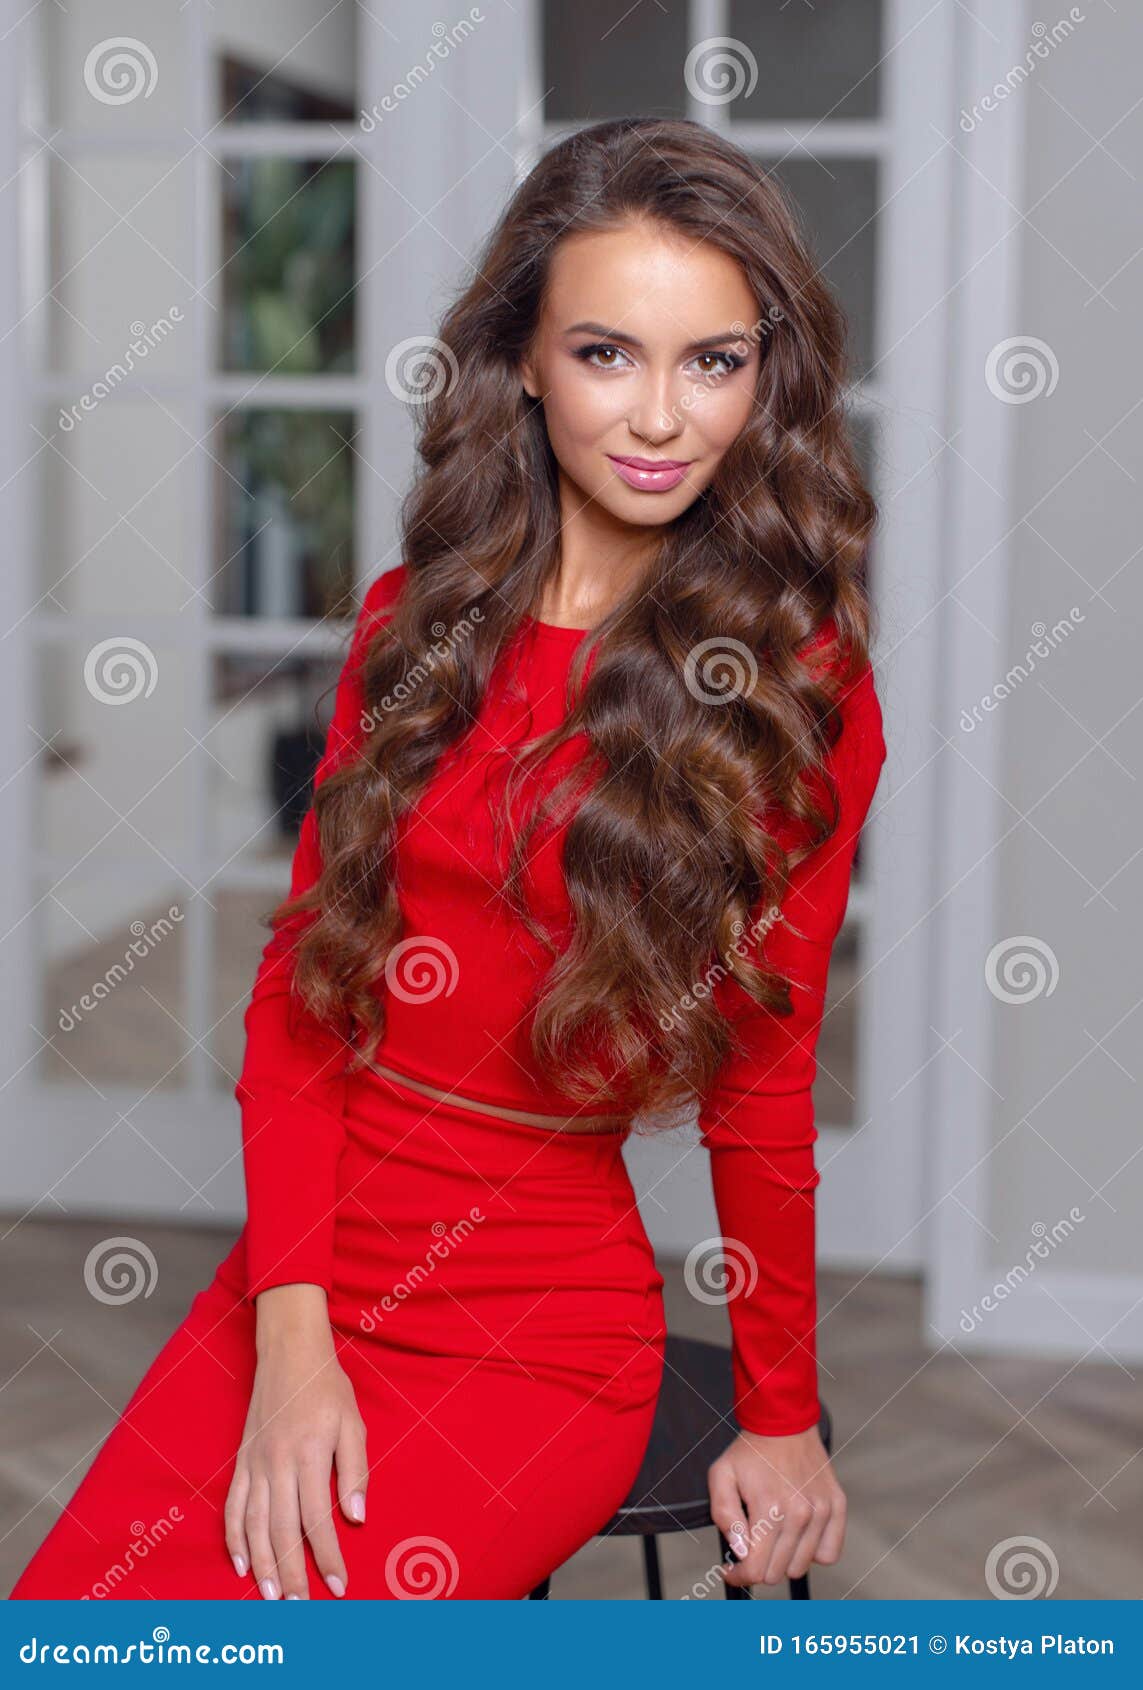 Фото Красивые Девушки Красный Платье